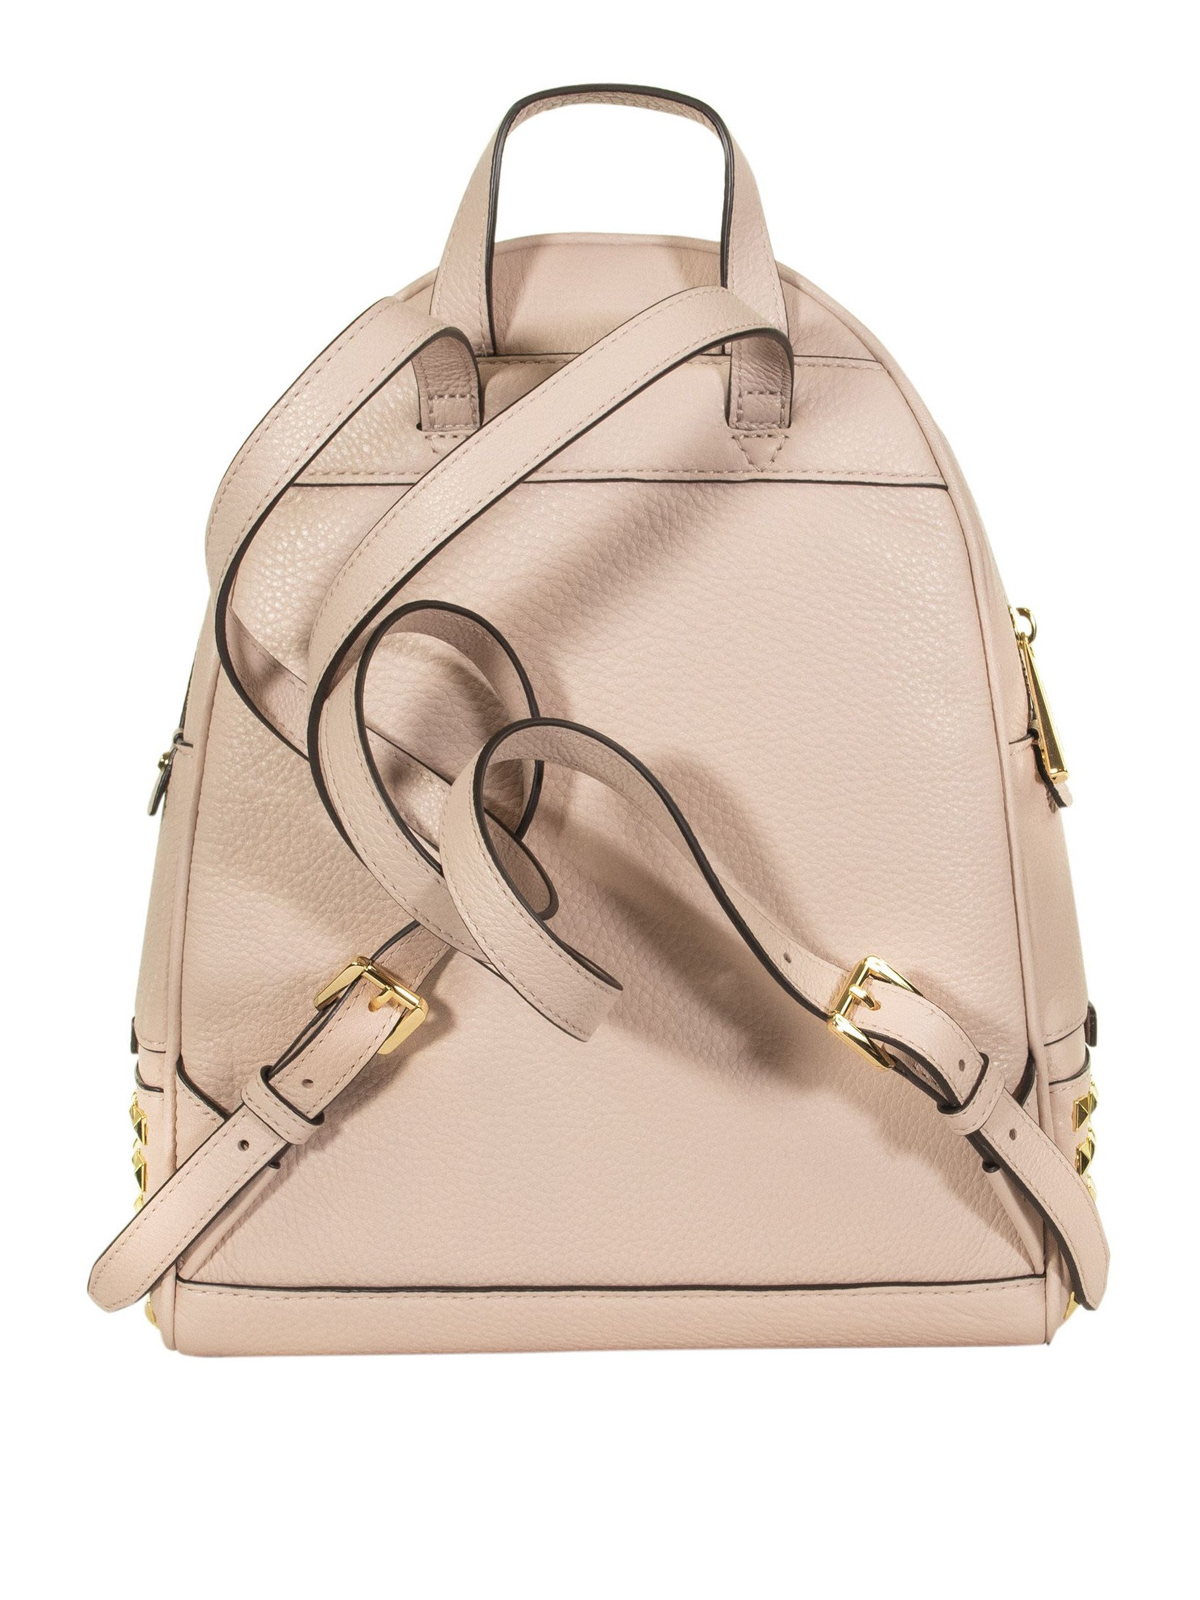 Michael Kors Medium Backpack Soft Pink  Backpack  fashionette